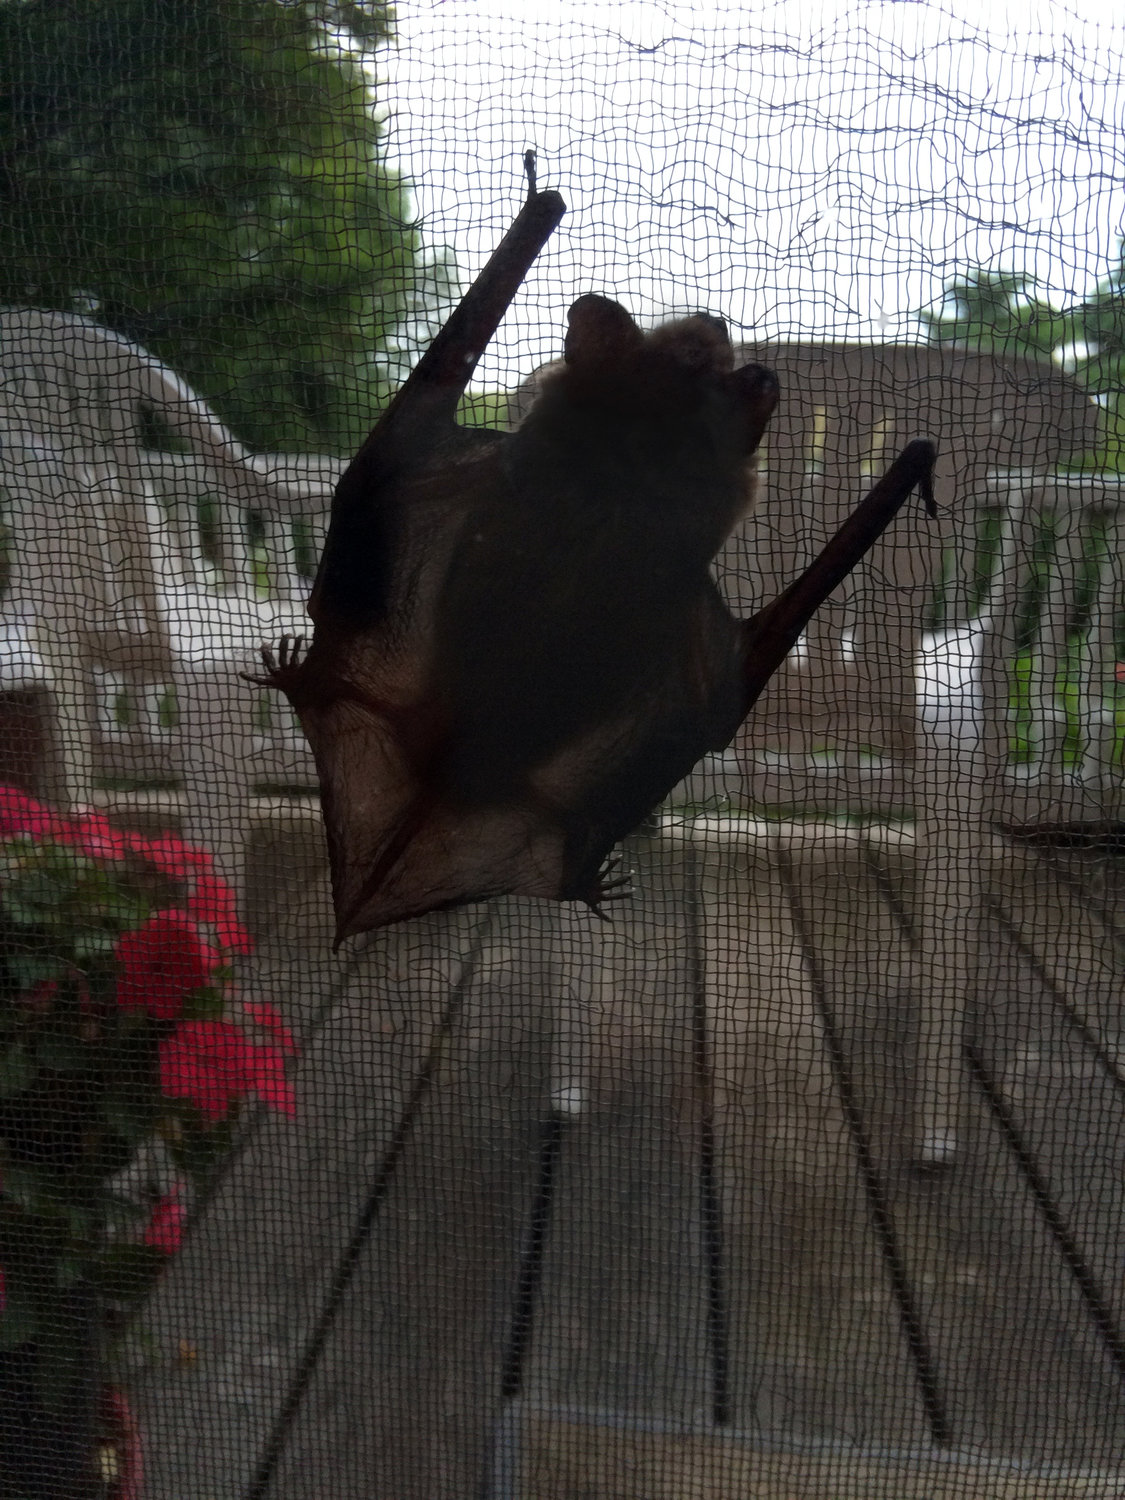 Knock, knock: A bat checks out a home.